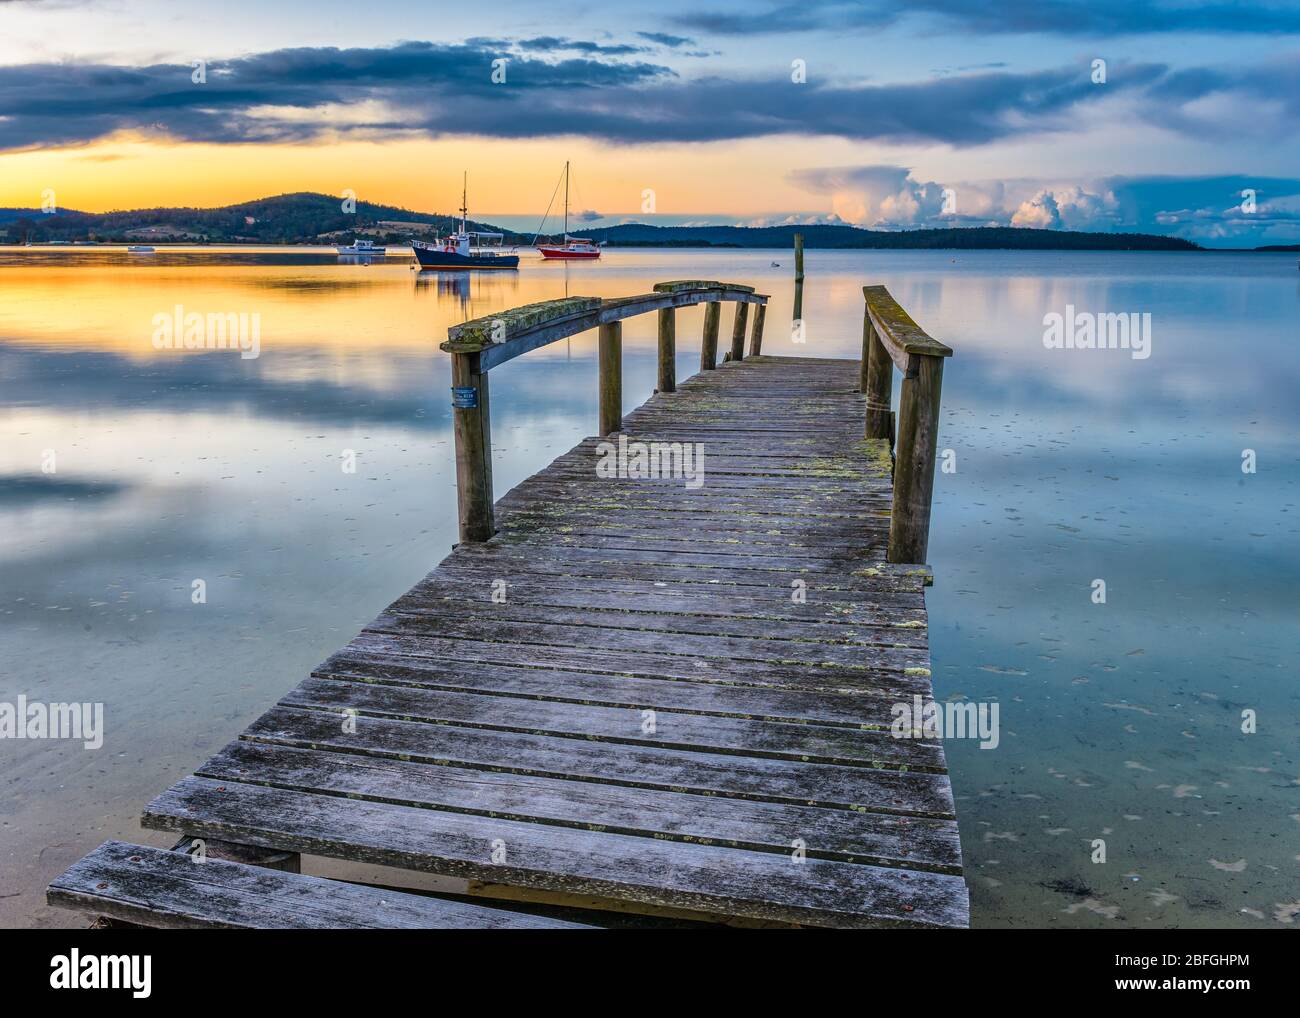 Un vecchio molo in legno e barche ormeggiate in modo sicuro si aggiungono al tramonto panoramico sulla superficie speculare della Baia di Sant''Elena in Tasmania. Foto Stock